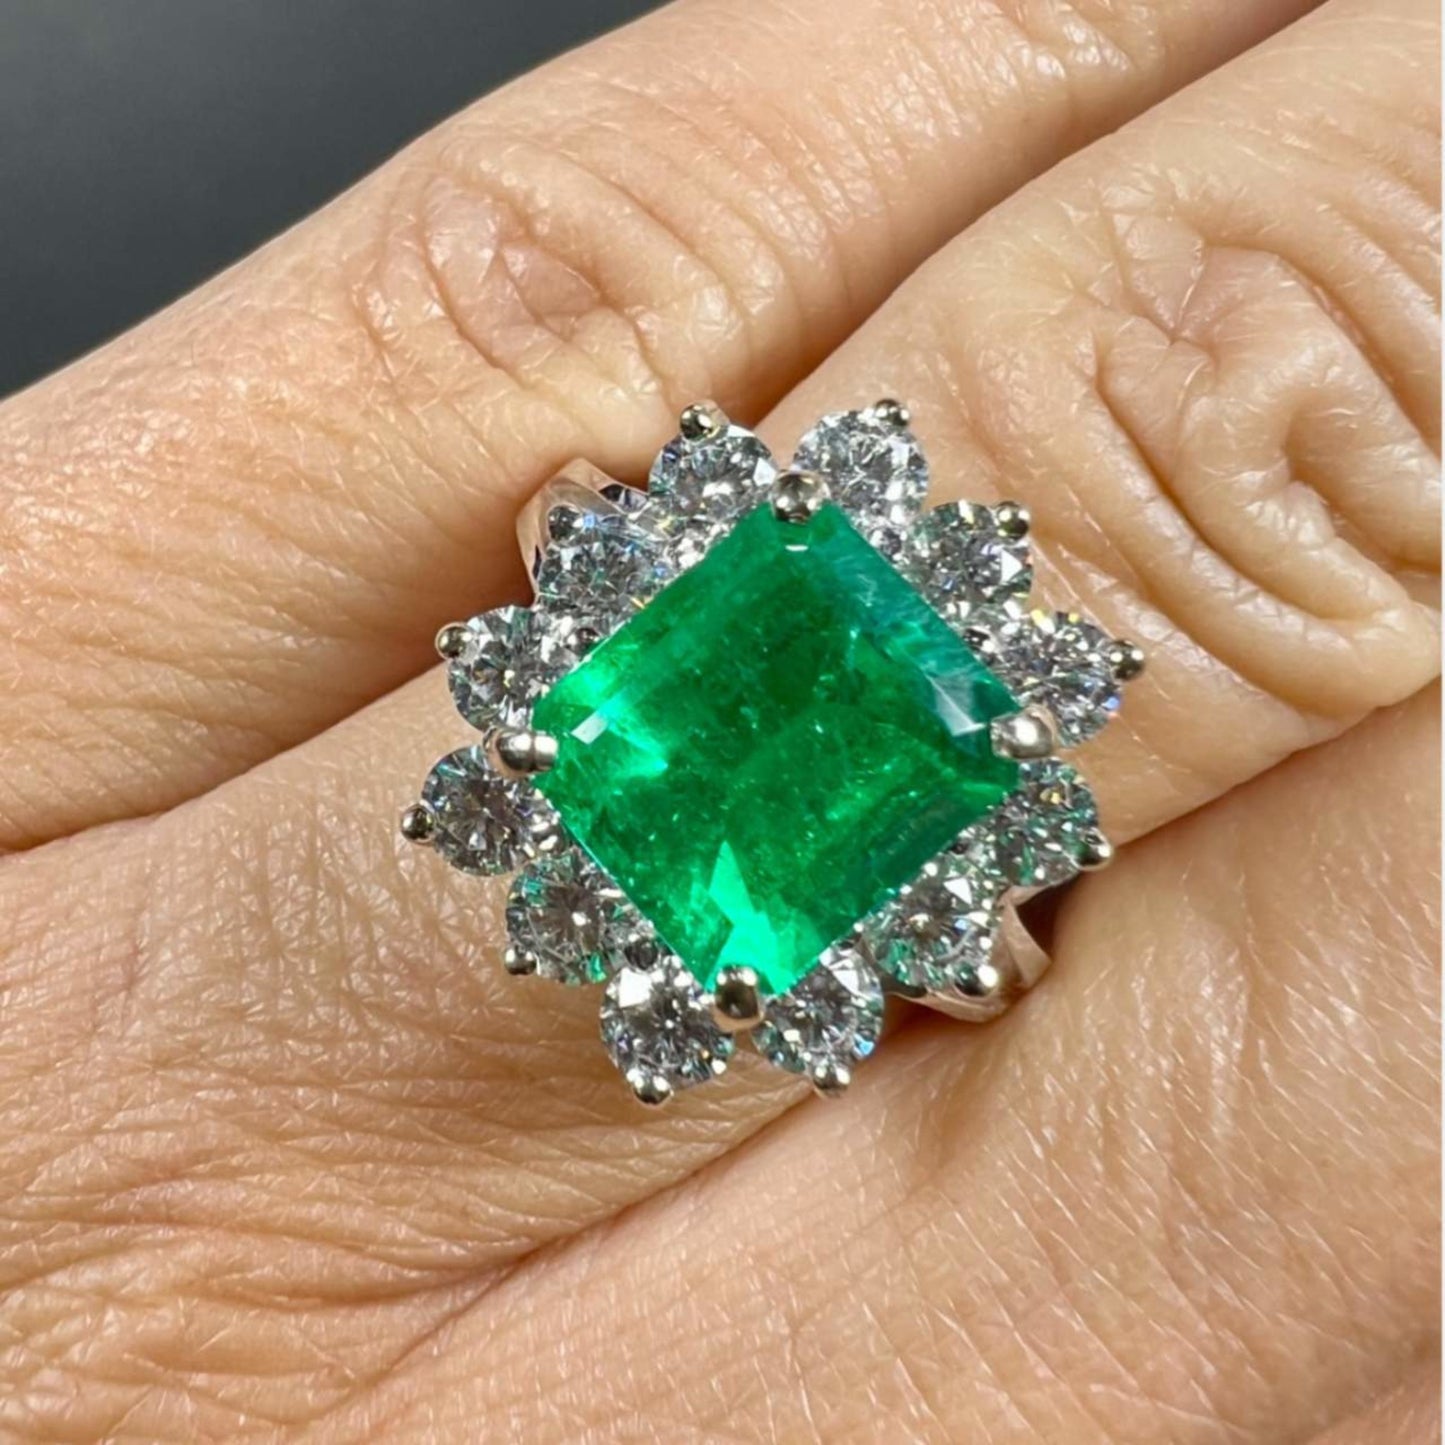 Post-1980s 14KT White Gold Emerald & Diamond Ring on finger